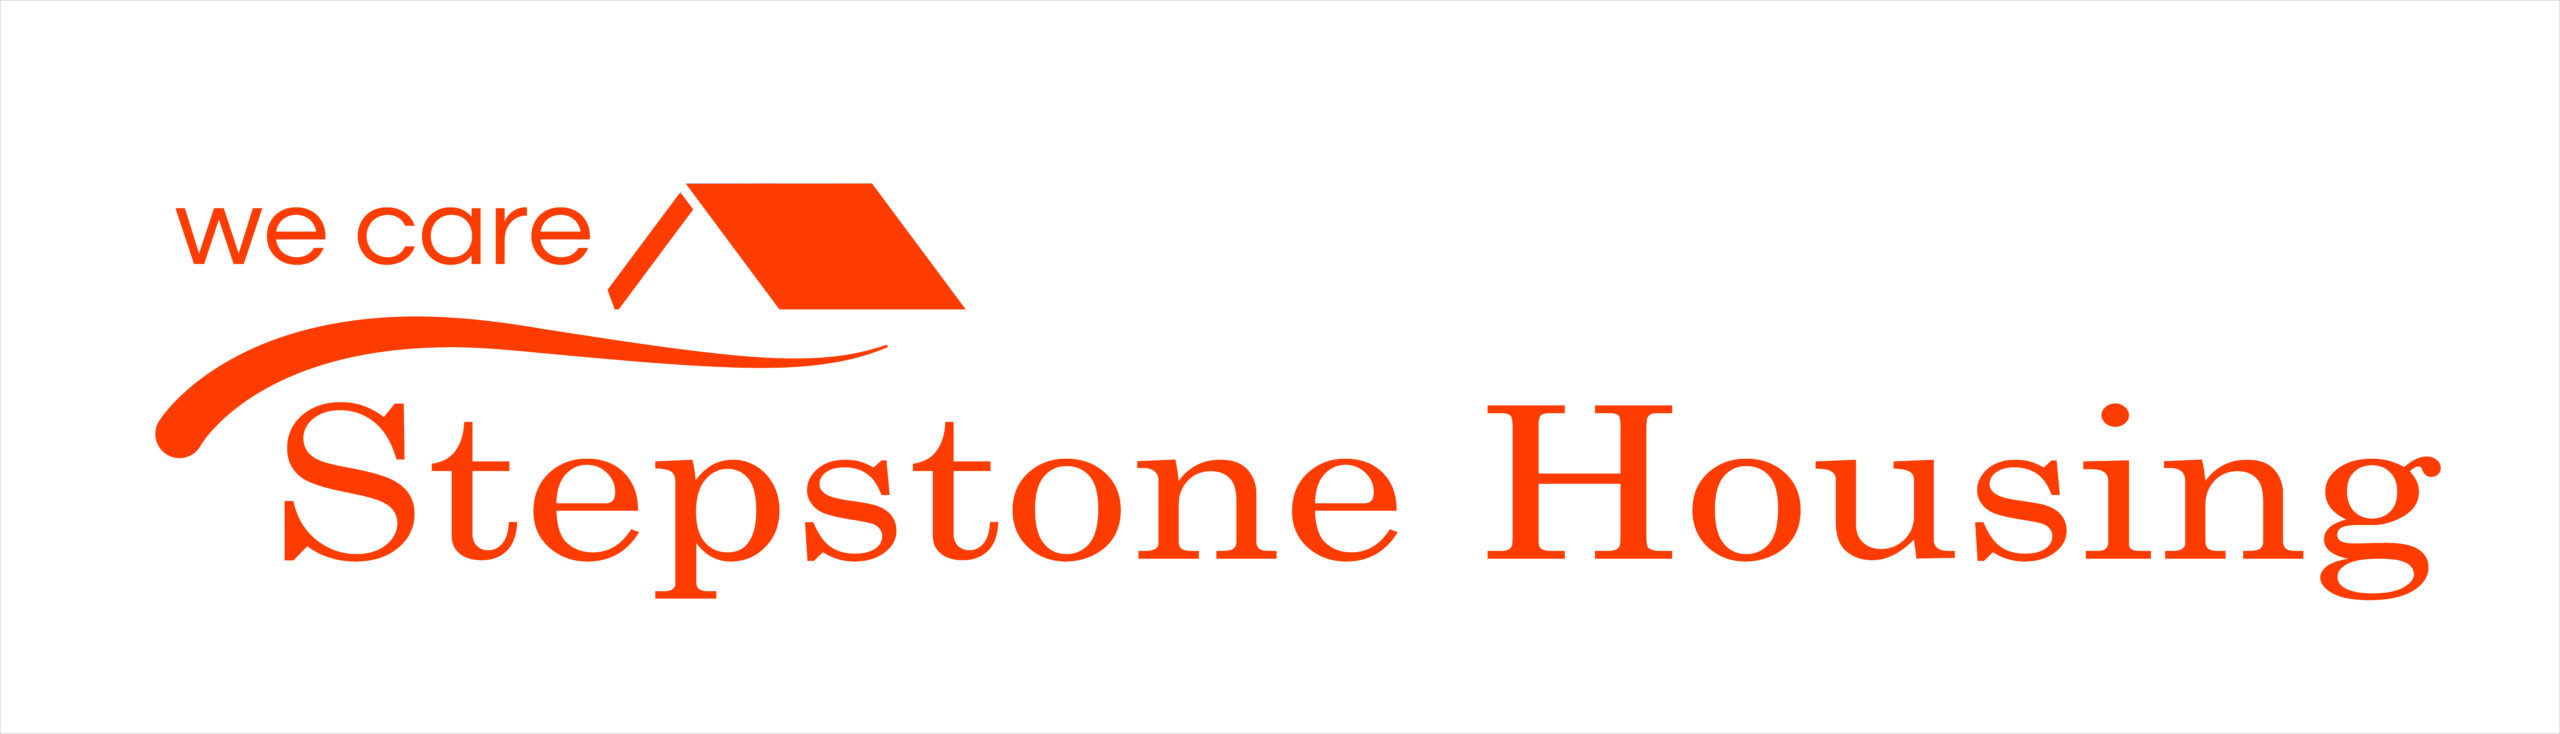 stepstone housing logo